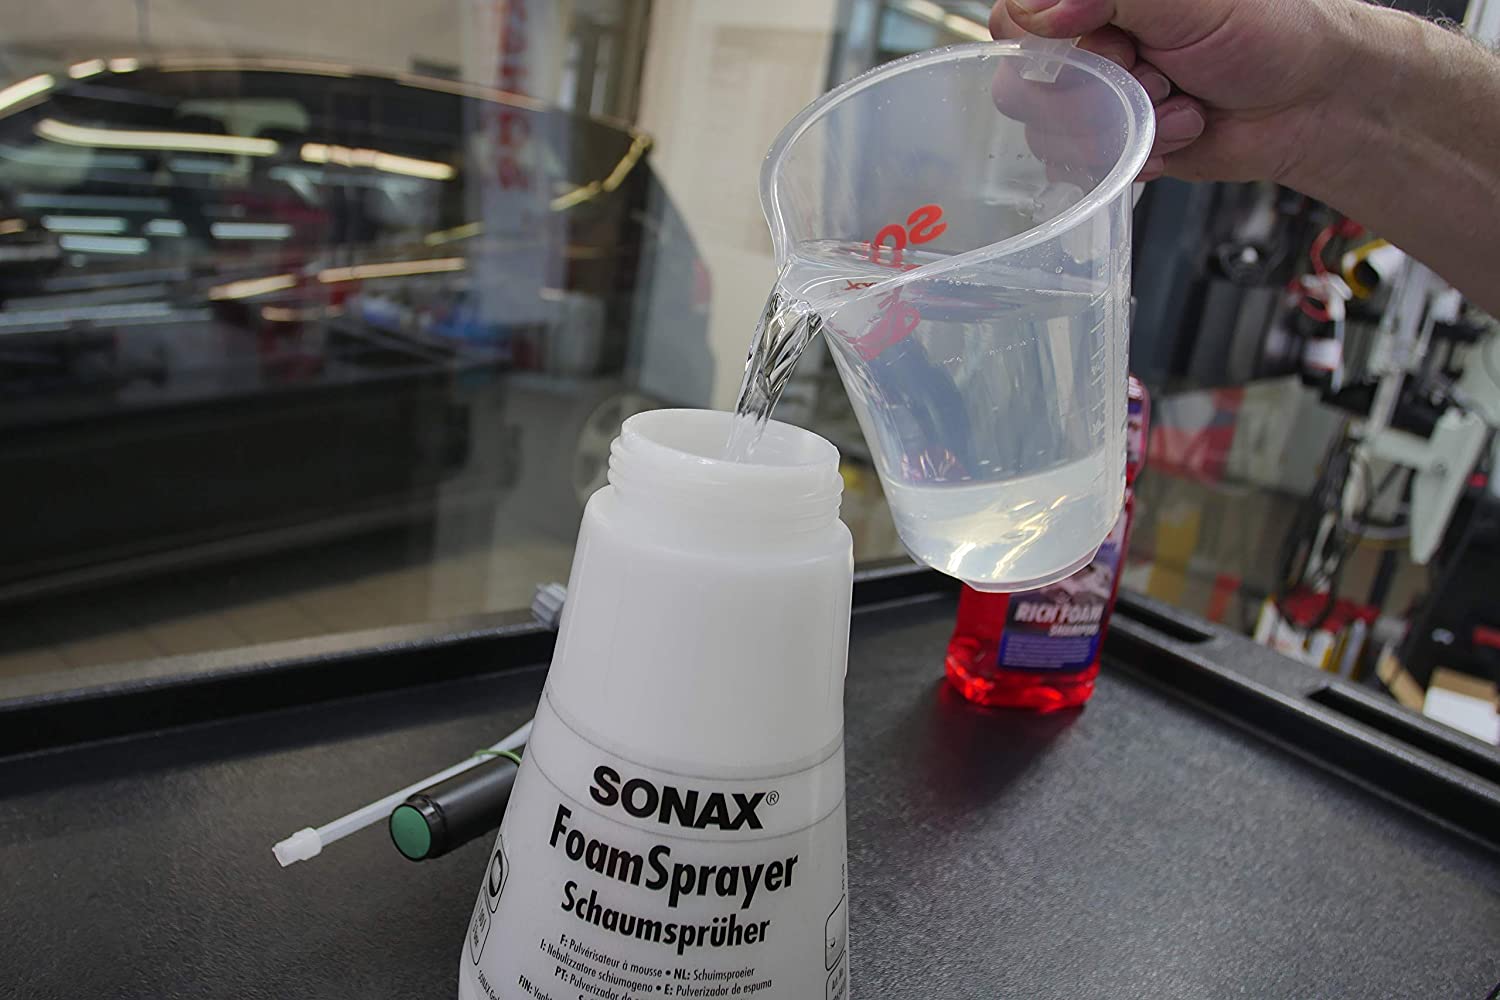 Sonax FoamSprayer Schaumsprüher Foam Sprayer 1 Liter